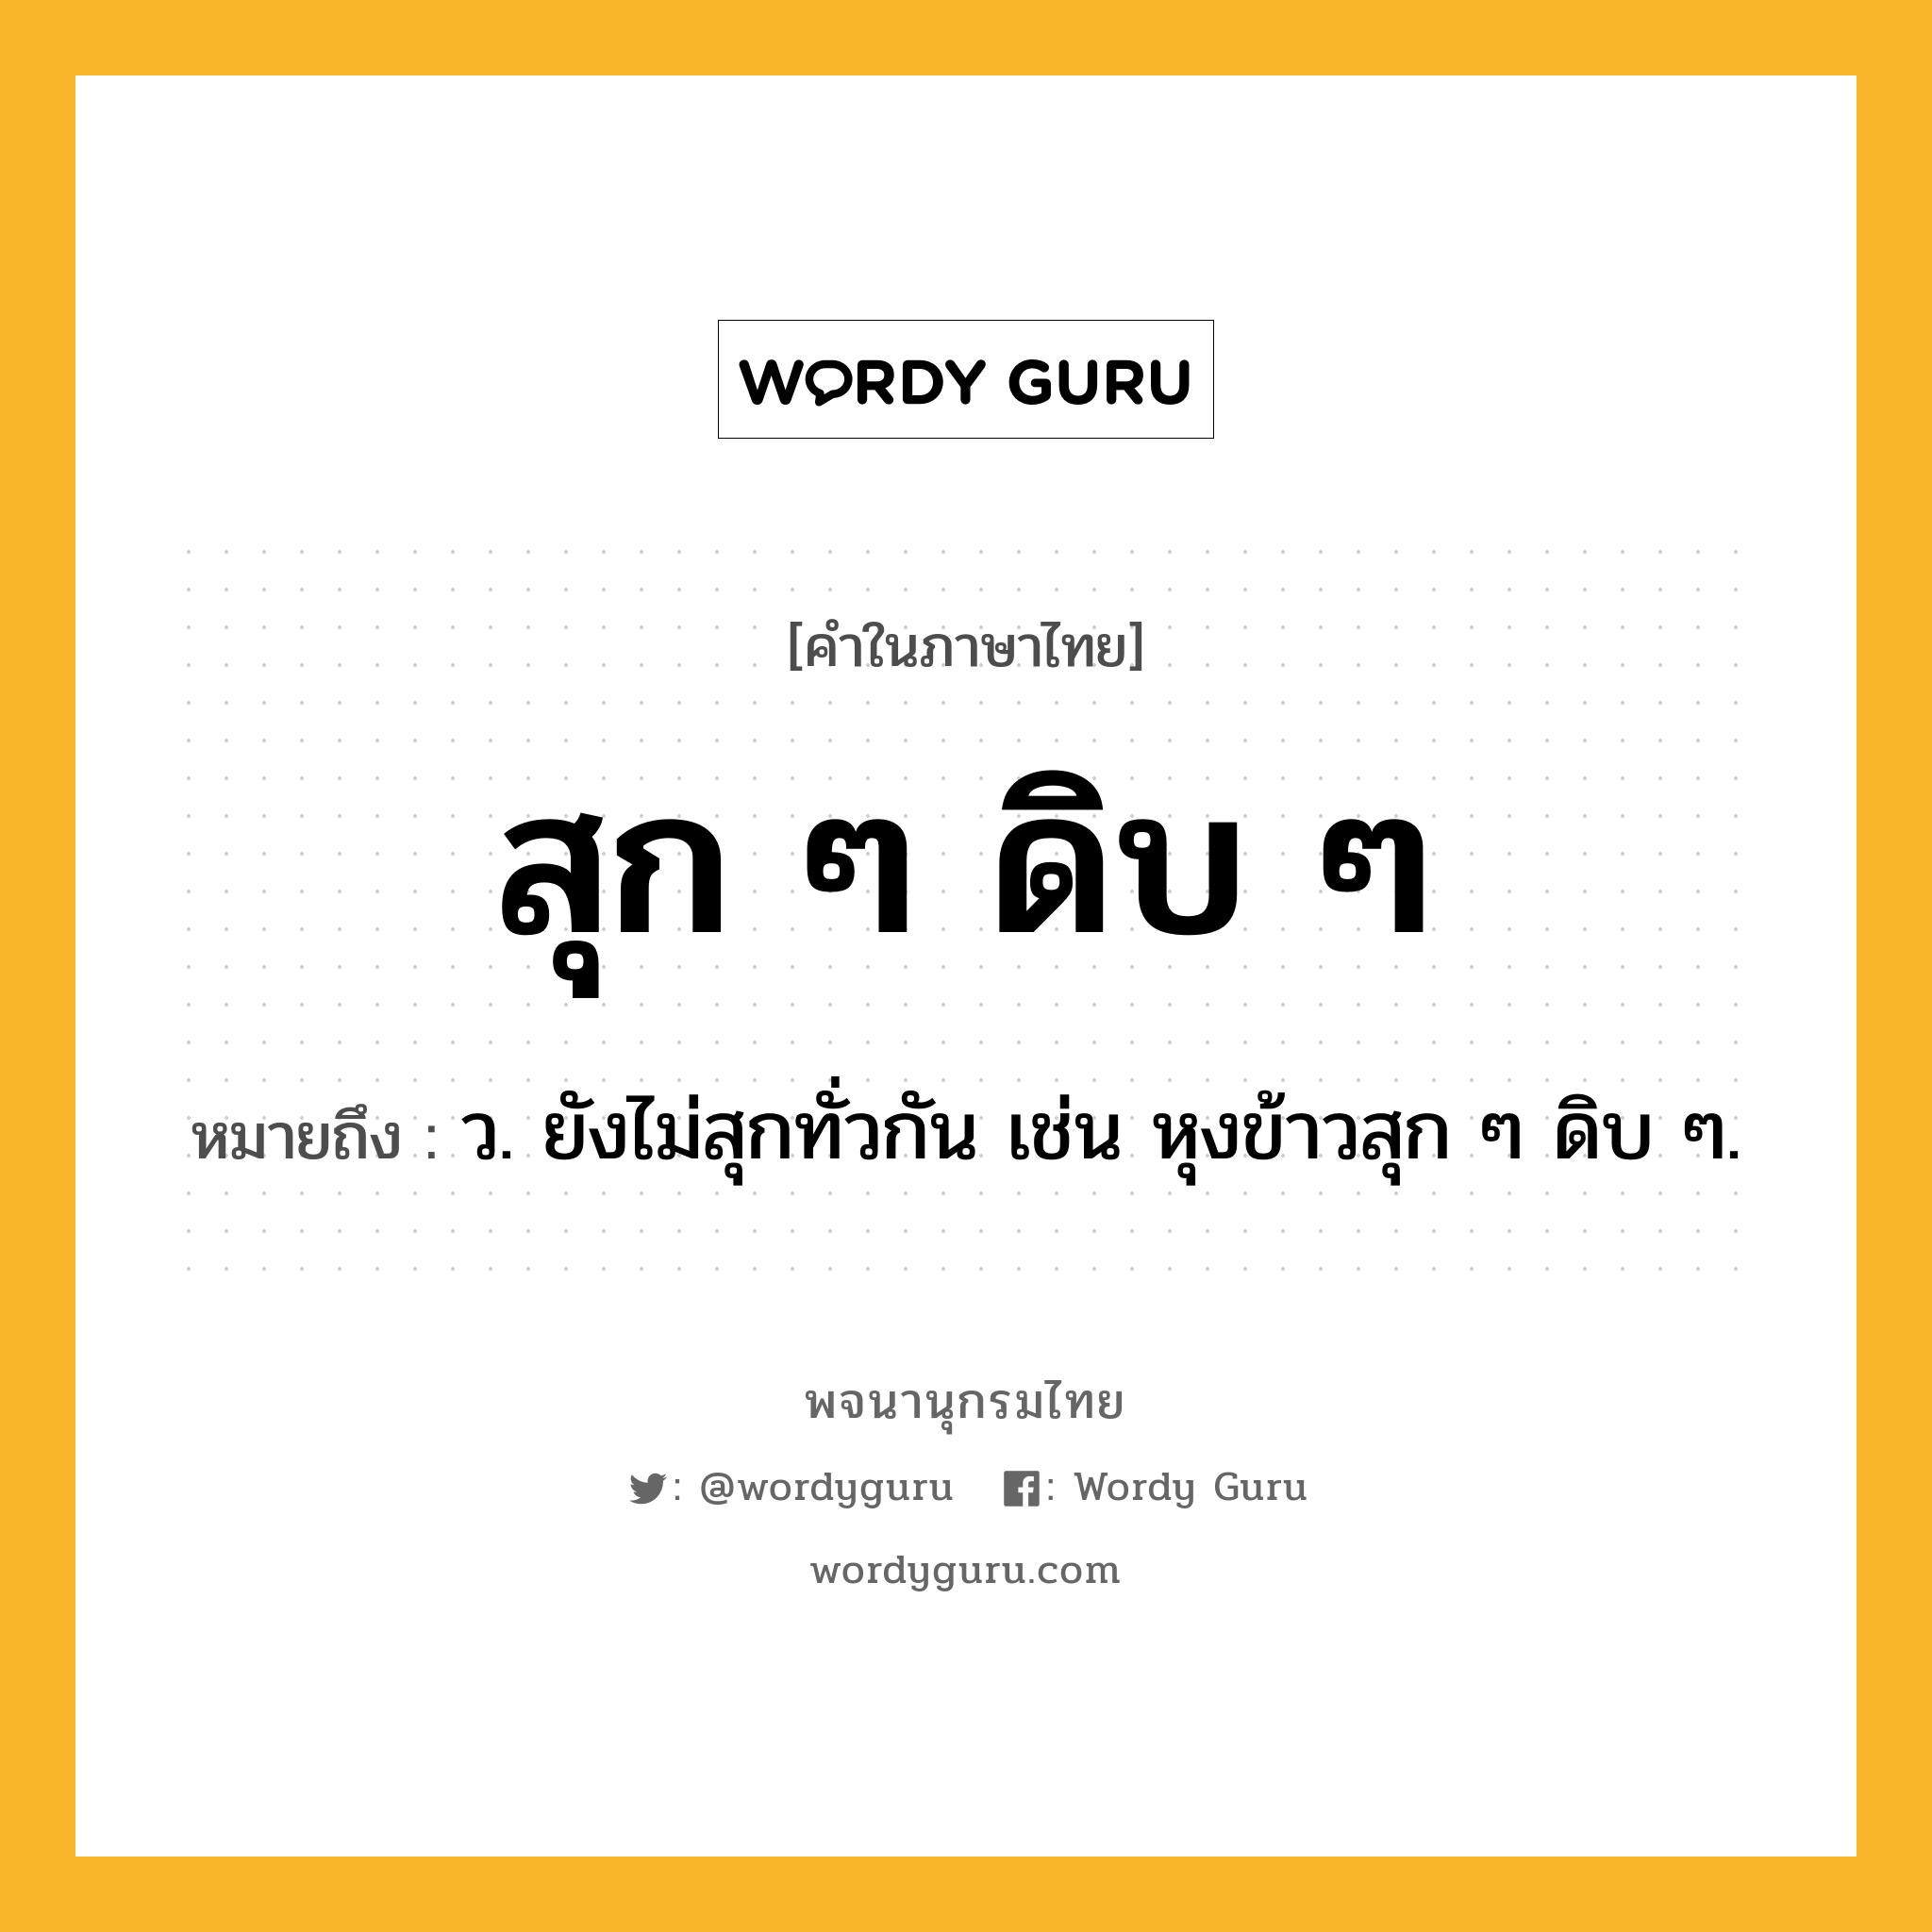 สุก ๆ ดิบ ๆ ความหมาย หมายถึงอะไร?, คำในภาษาไทย สุก ๆ ดิบ ๆ หมายถึง ว. ยังไม่สุกทั่วกัน เช่น หุงข้าวสุก ๆ ดิบ ๆ.